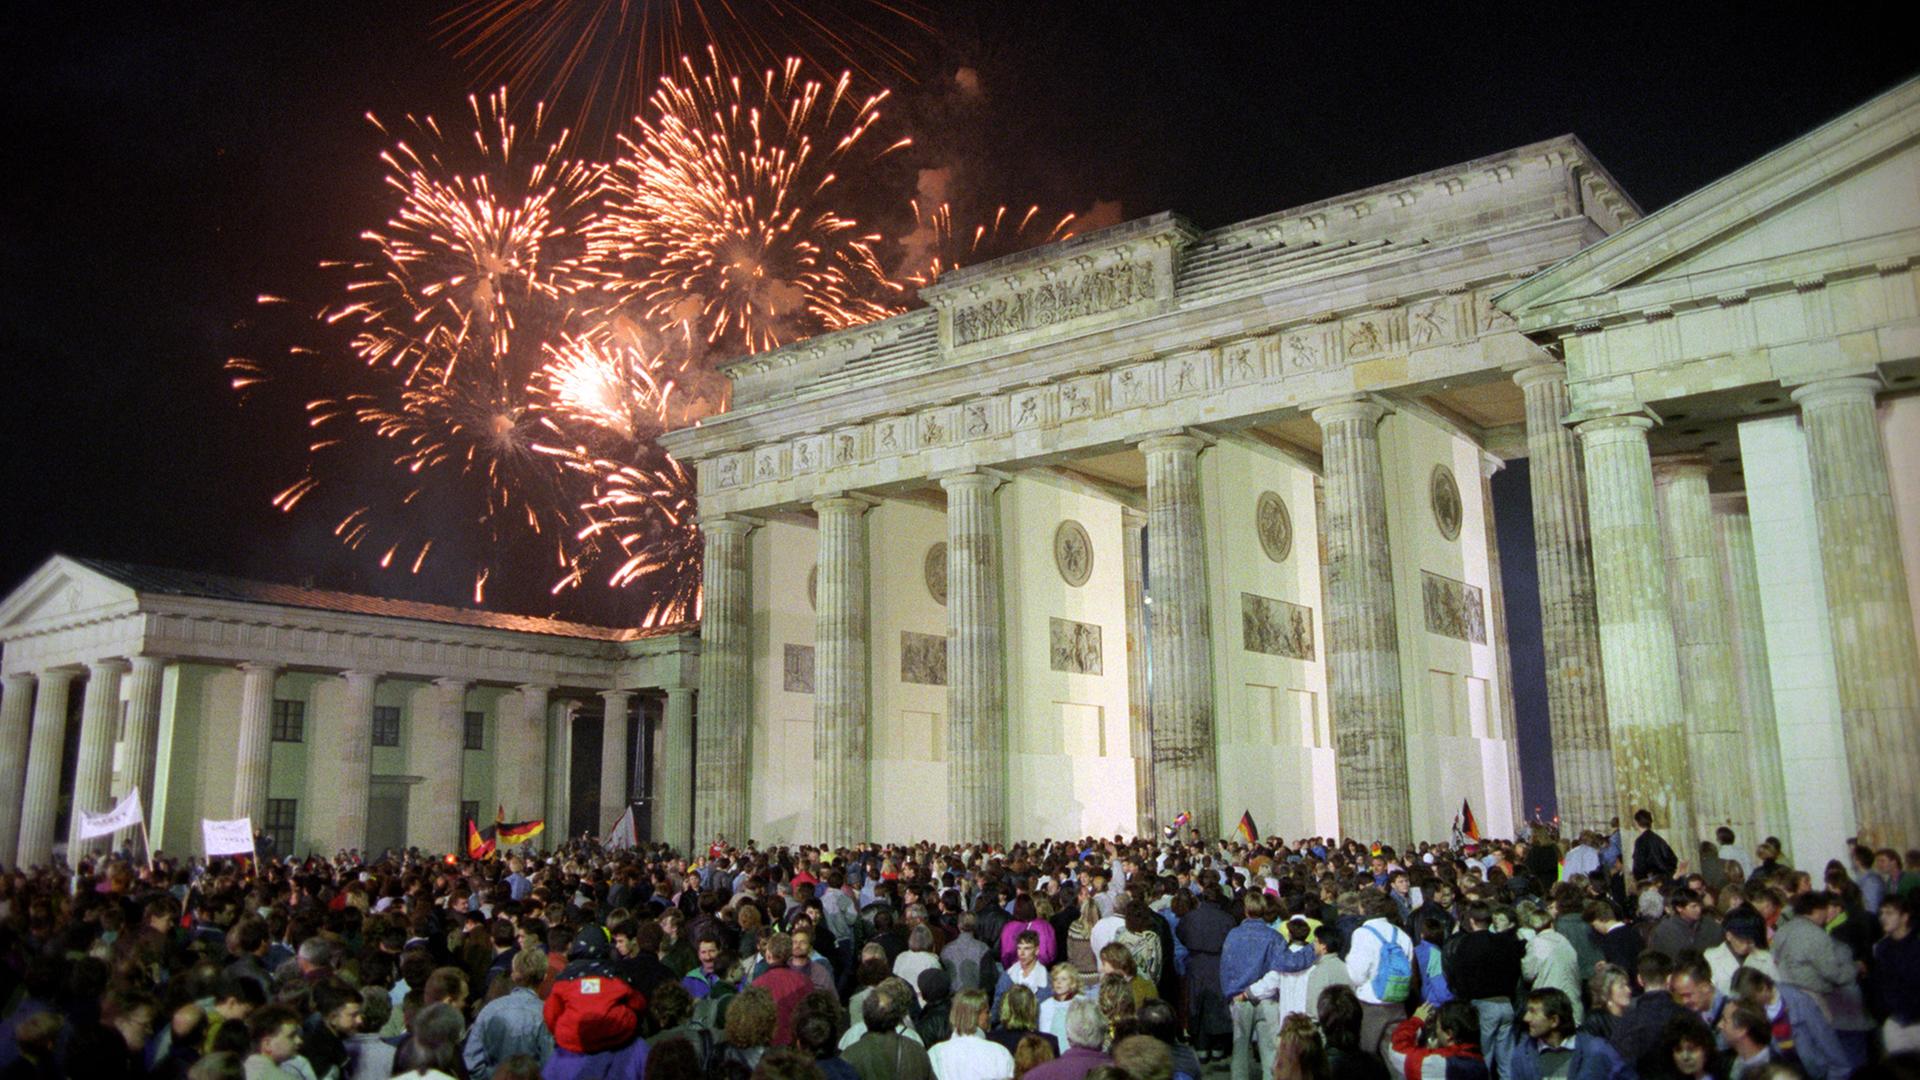 Mit einem Feuerwerk am Brandenburger Tor in Berlin feierten rund eine Million Menschen in der Nacht vom 2. auf den 3. Oktober 1990 die deutsche Wiedervereinigung.